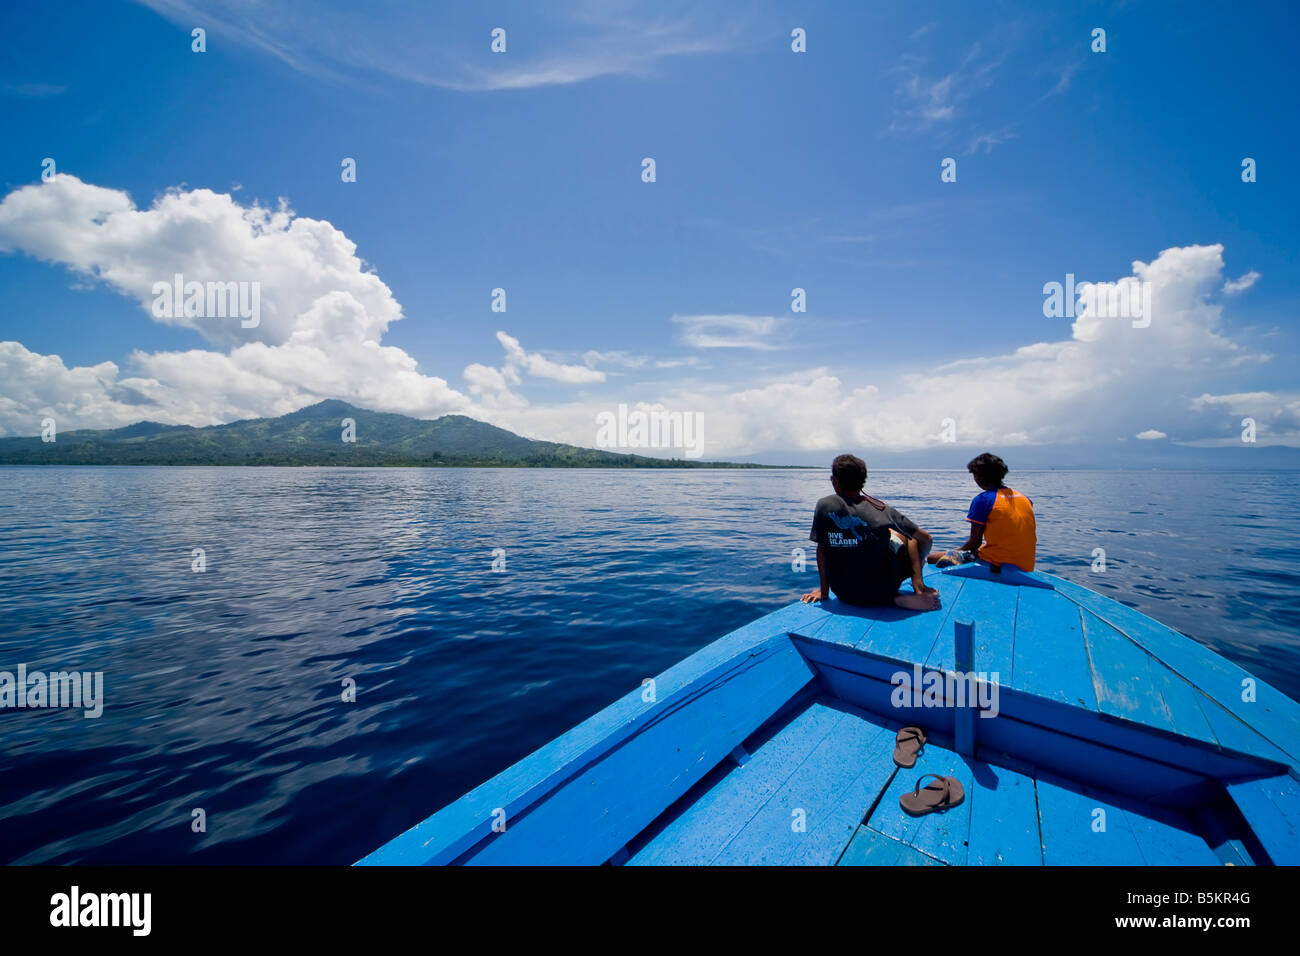 Blick auf eine Tauchen Boote Verbeugung vor einem blauen Himmel mit schönen Wolkengebilde. Ein erwachsenes paar sitzt am Bug des Bootes. Stockfoto